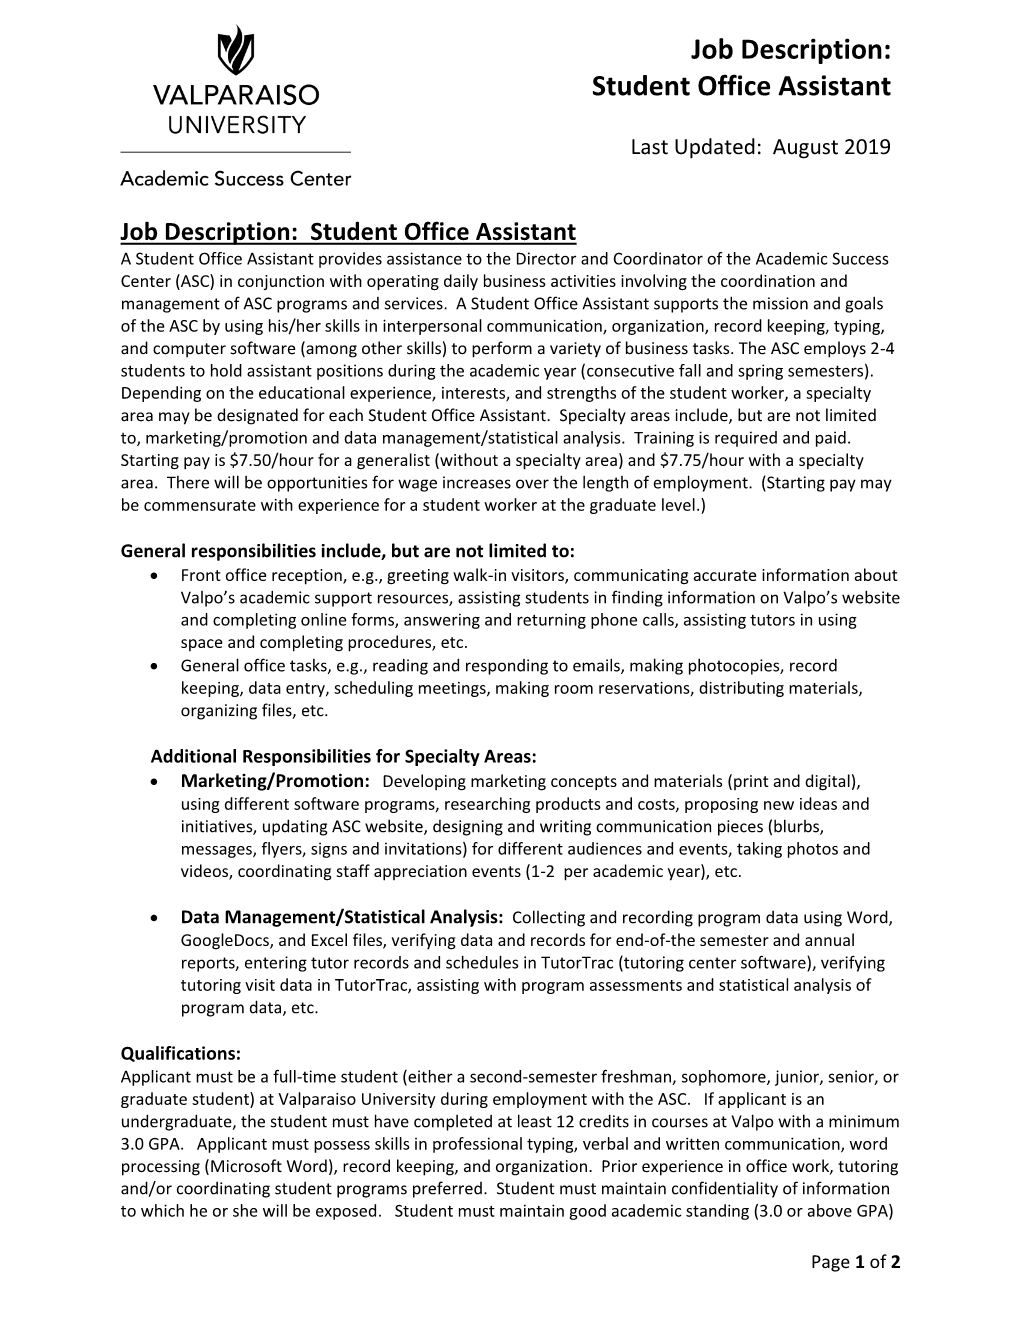 Job Description: Student Office Assistant